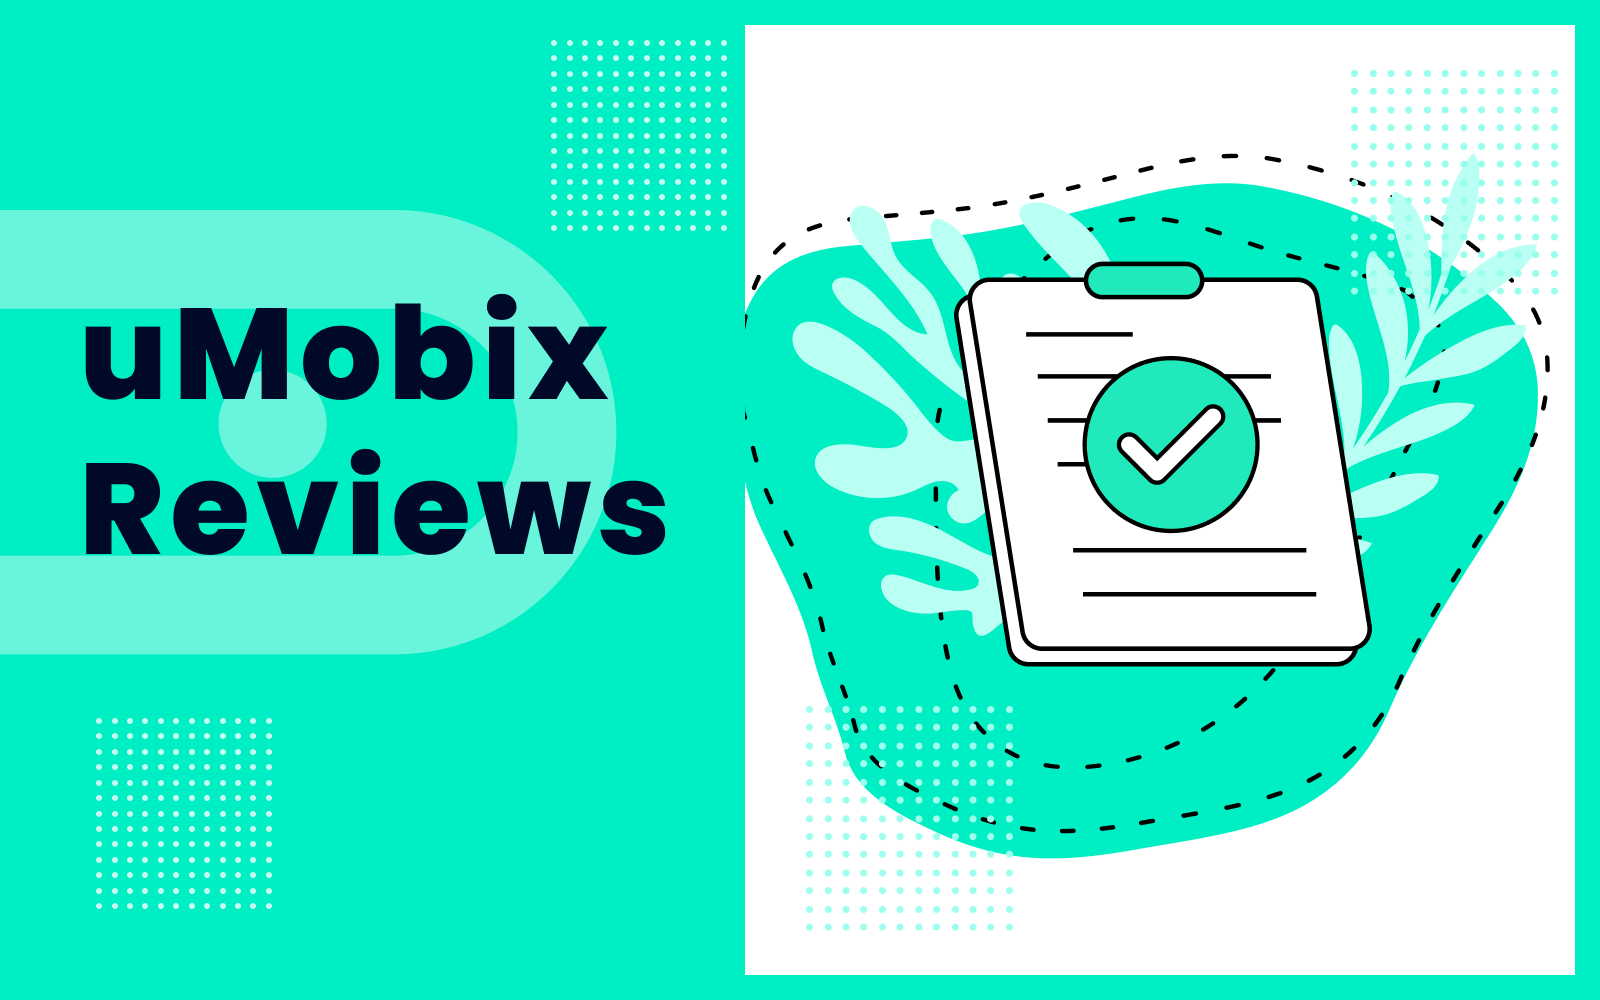 uMobix Reviews 2022: Pros, Cons, Setup, and More